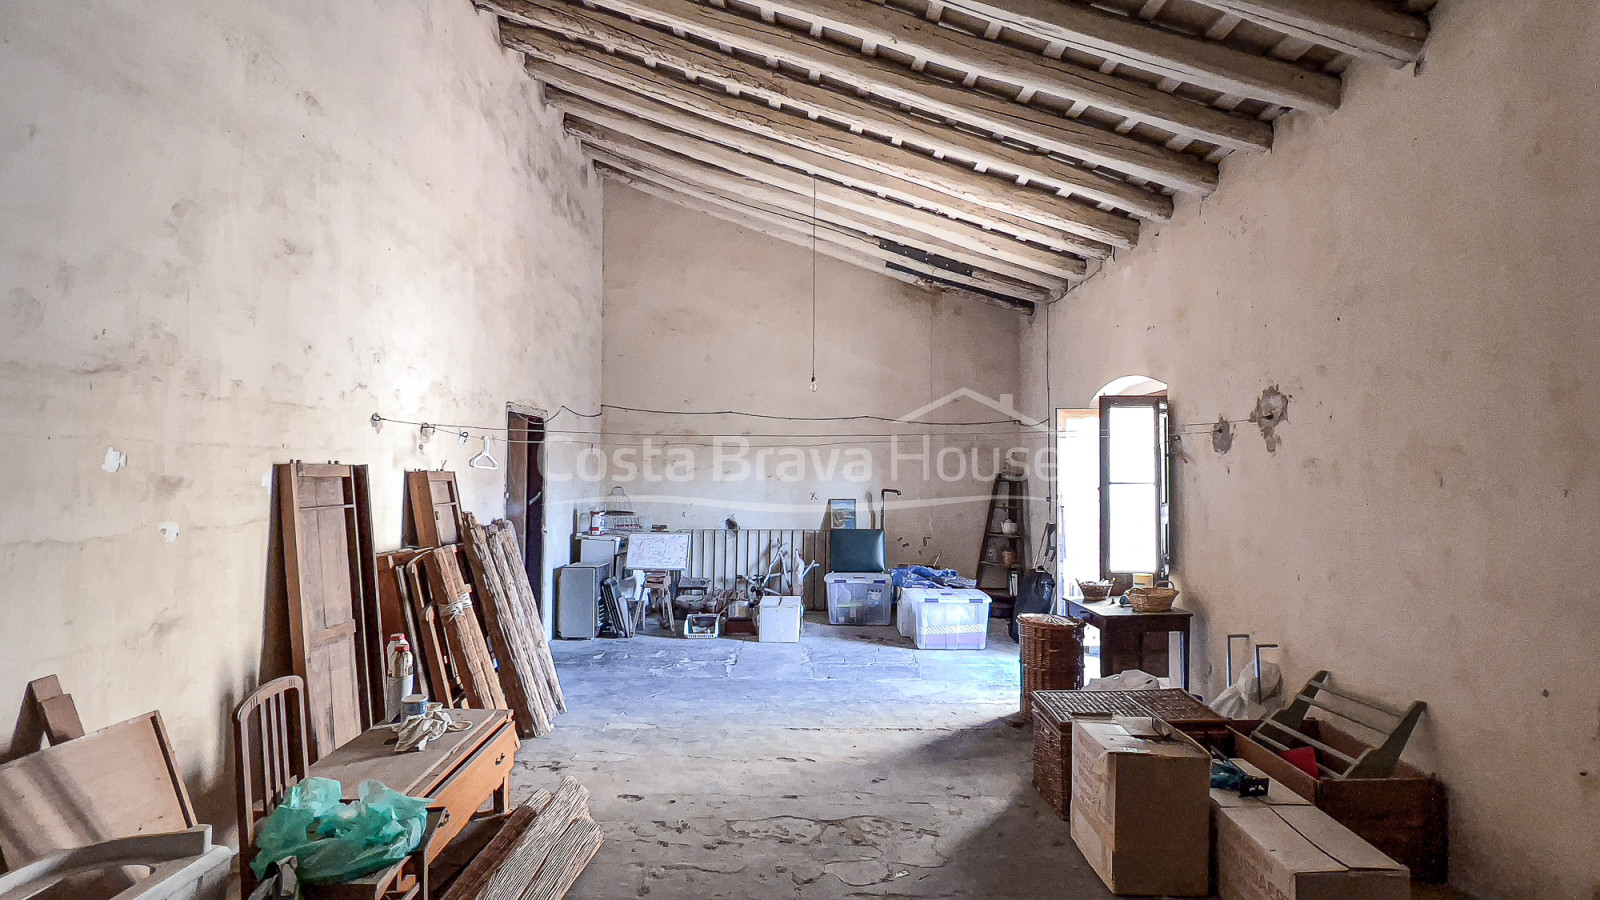 Maison historique rénovée à vendre à Torroella de Montgrí